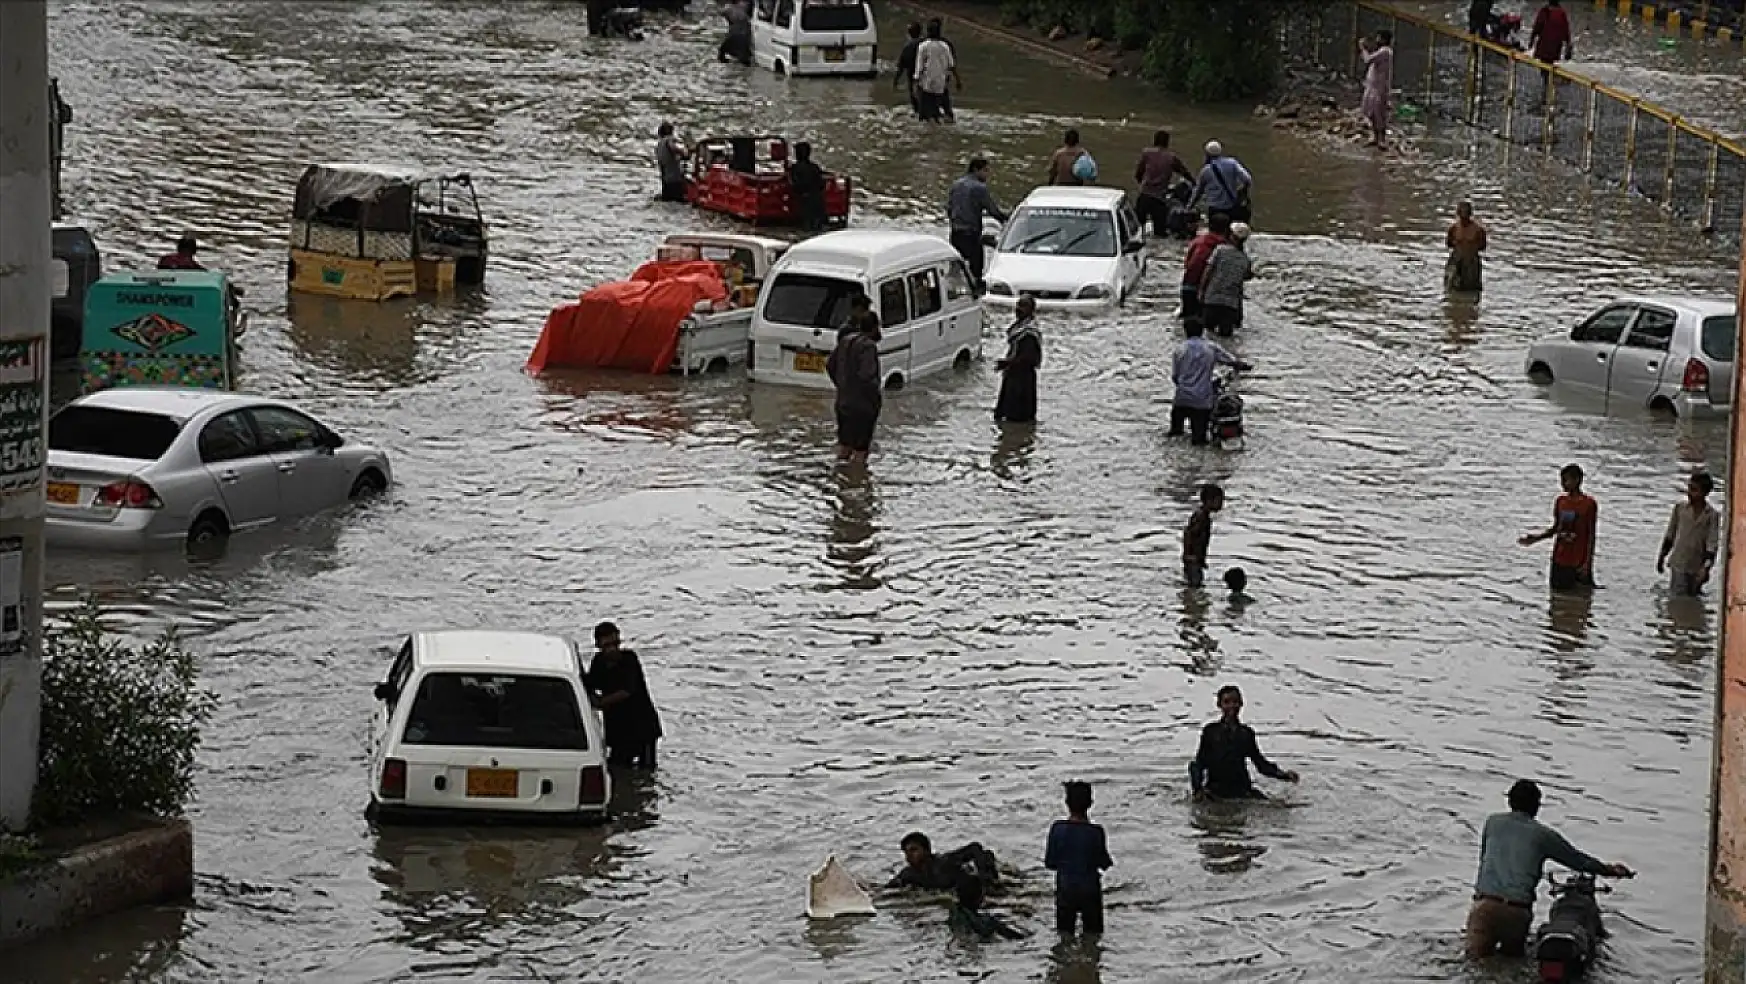 Pakistan'da yaklaşan Biparjoy siklon fırtınası sebebiyle tahliye işlemi başladı